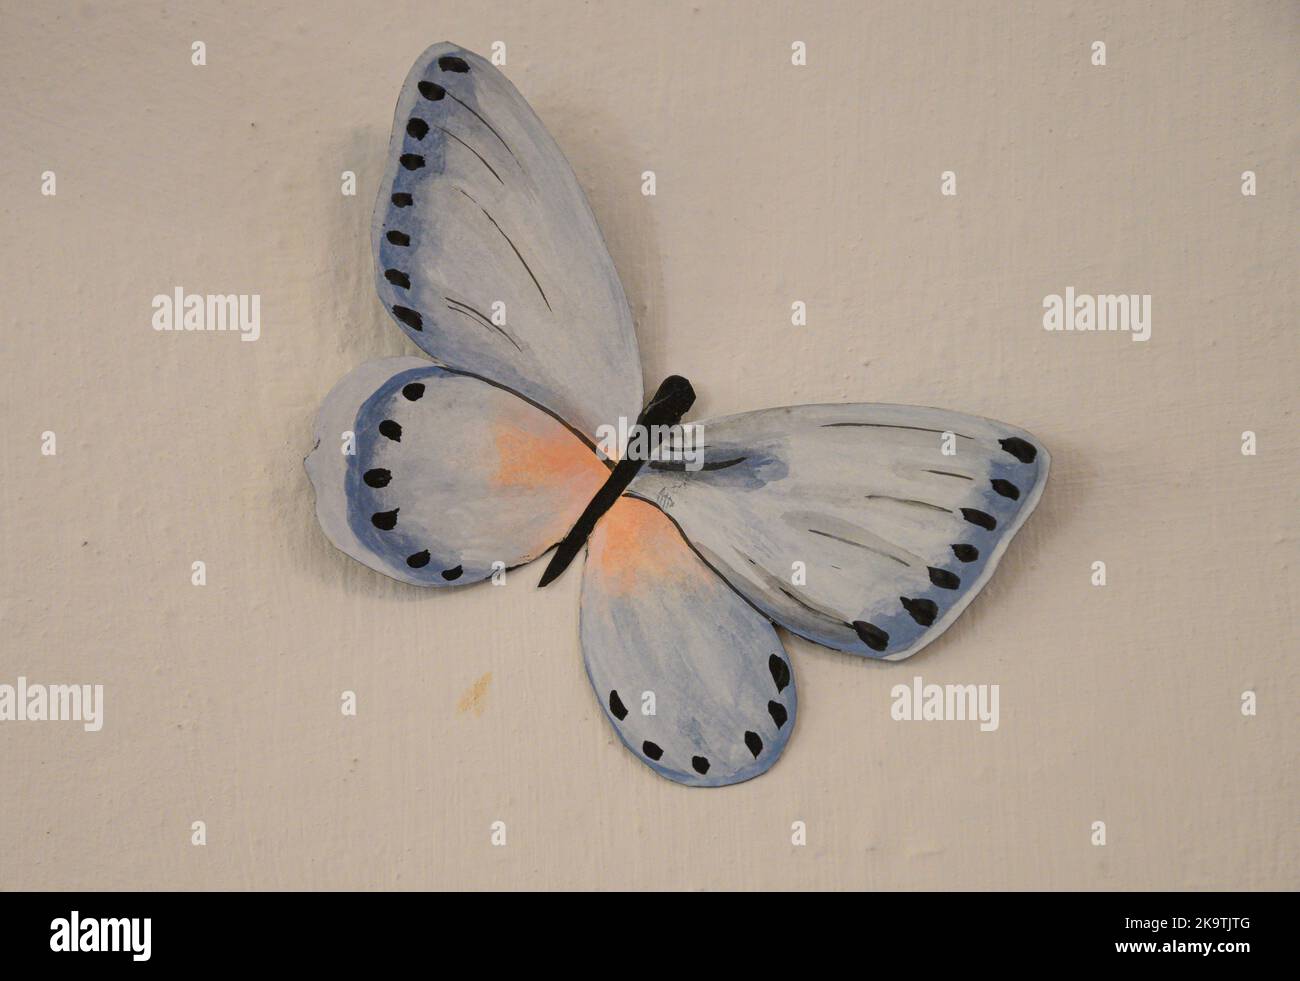 Des papillons de différentes formes et tailles sont exposés dans une exposition en Italie. Banque D'Images